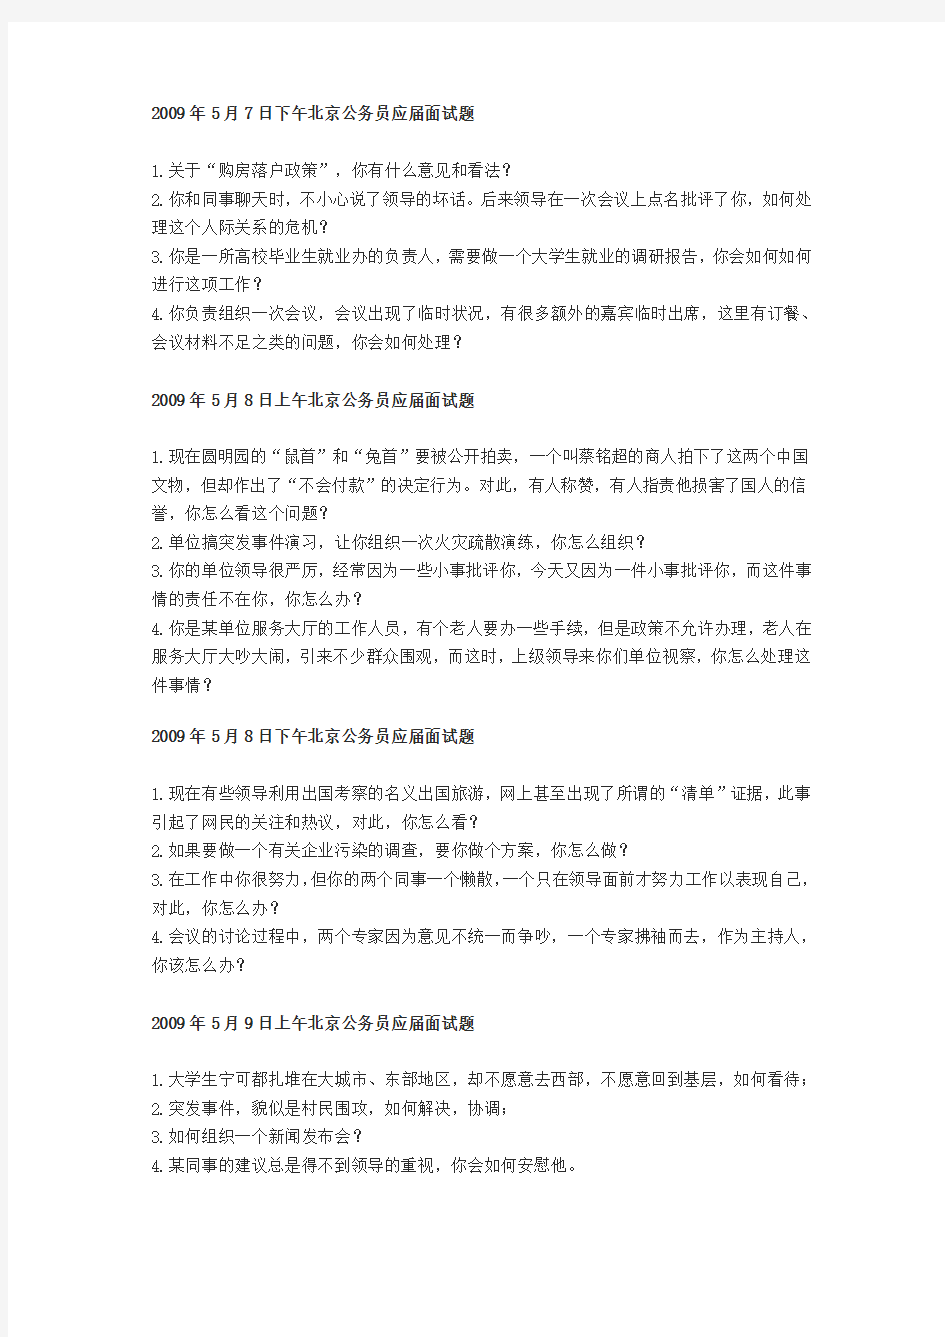 2009年5月北京市公务员考试面试真题集锦